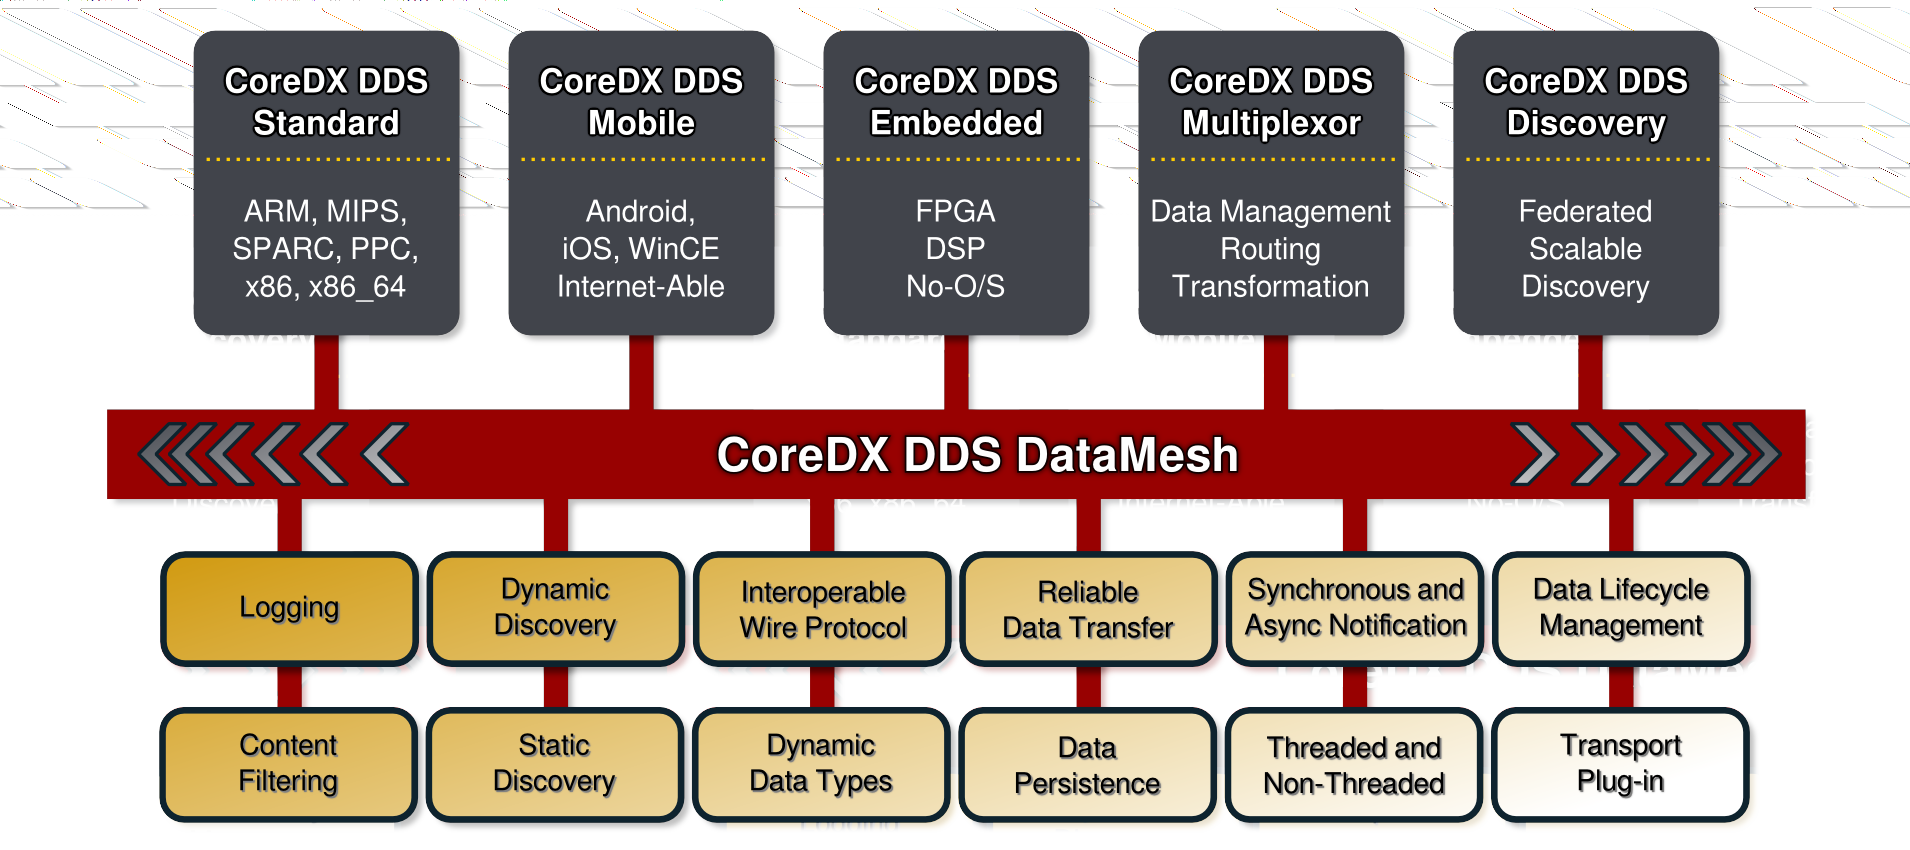 CoreDX DDS Product Line:  Mobile, Embedded, Desktop, Enterprise